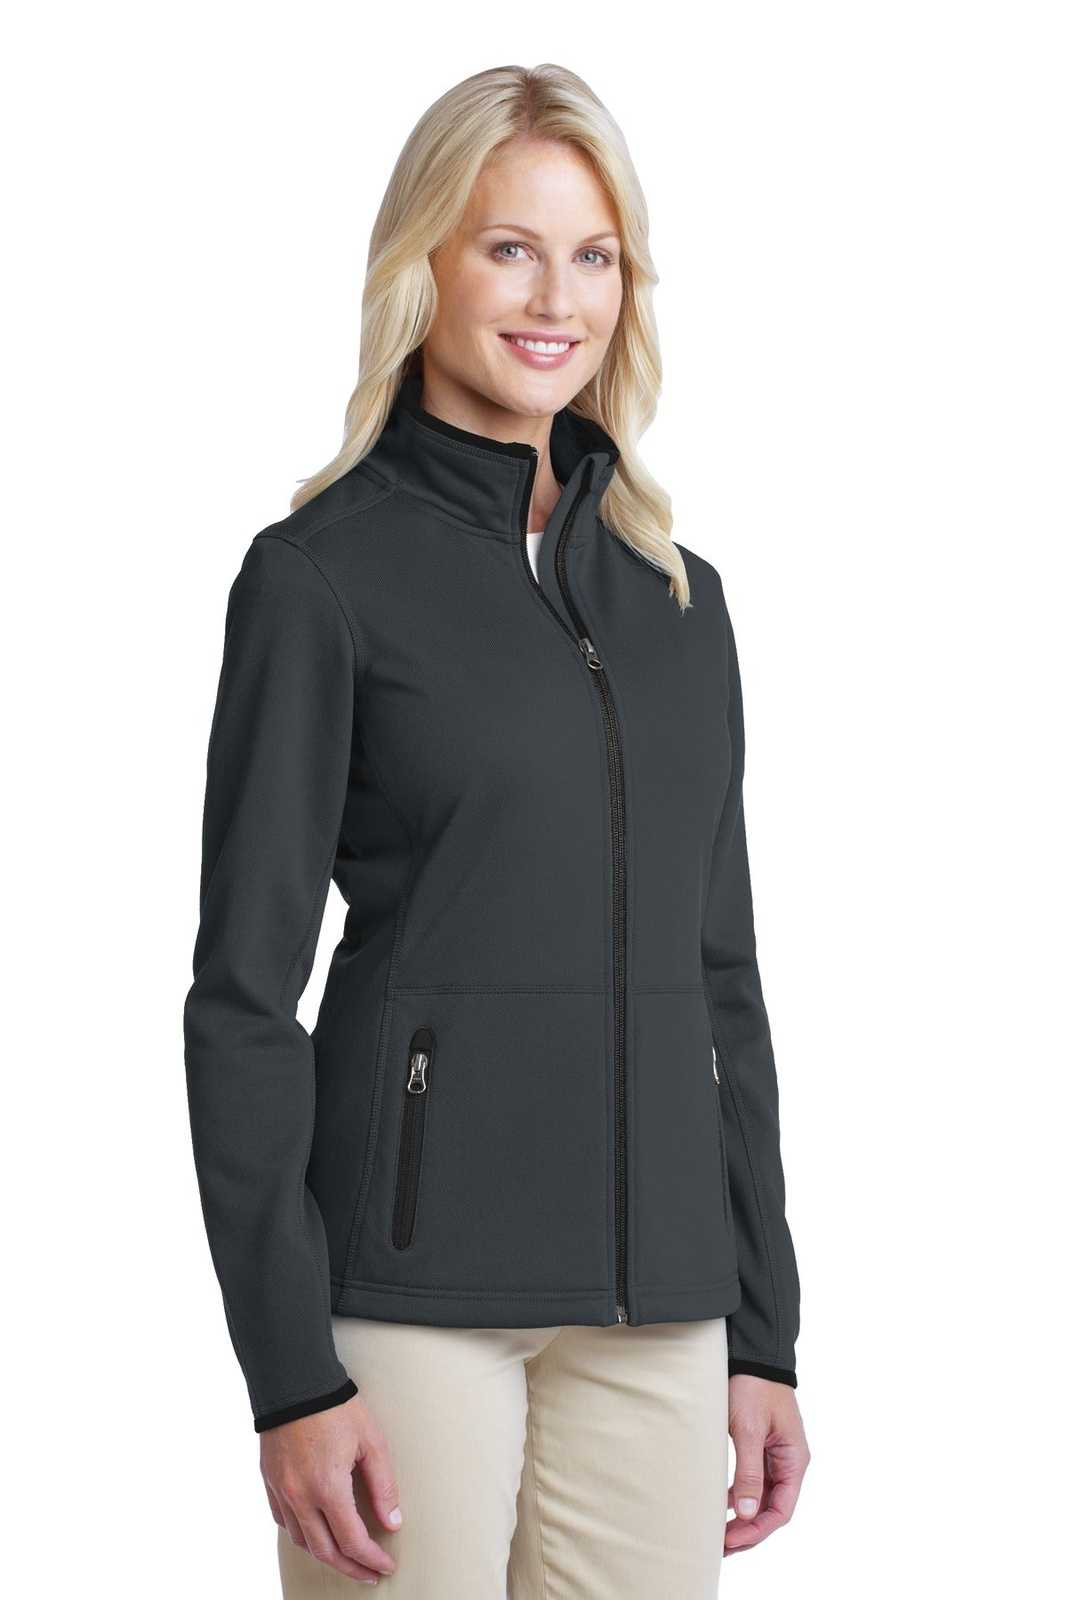 Port Authority L222 Ladies Pique Fleece Jacket - Graphite - HIT a Double - 4